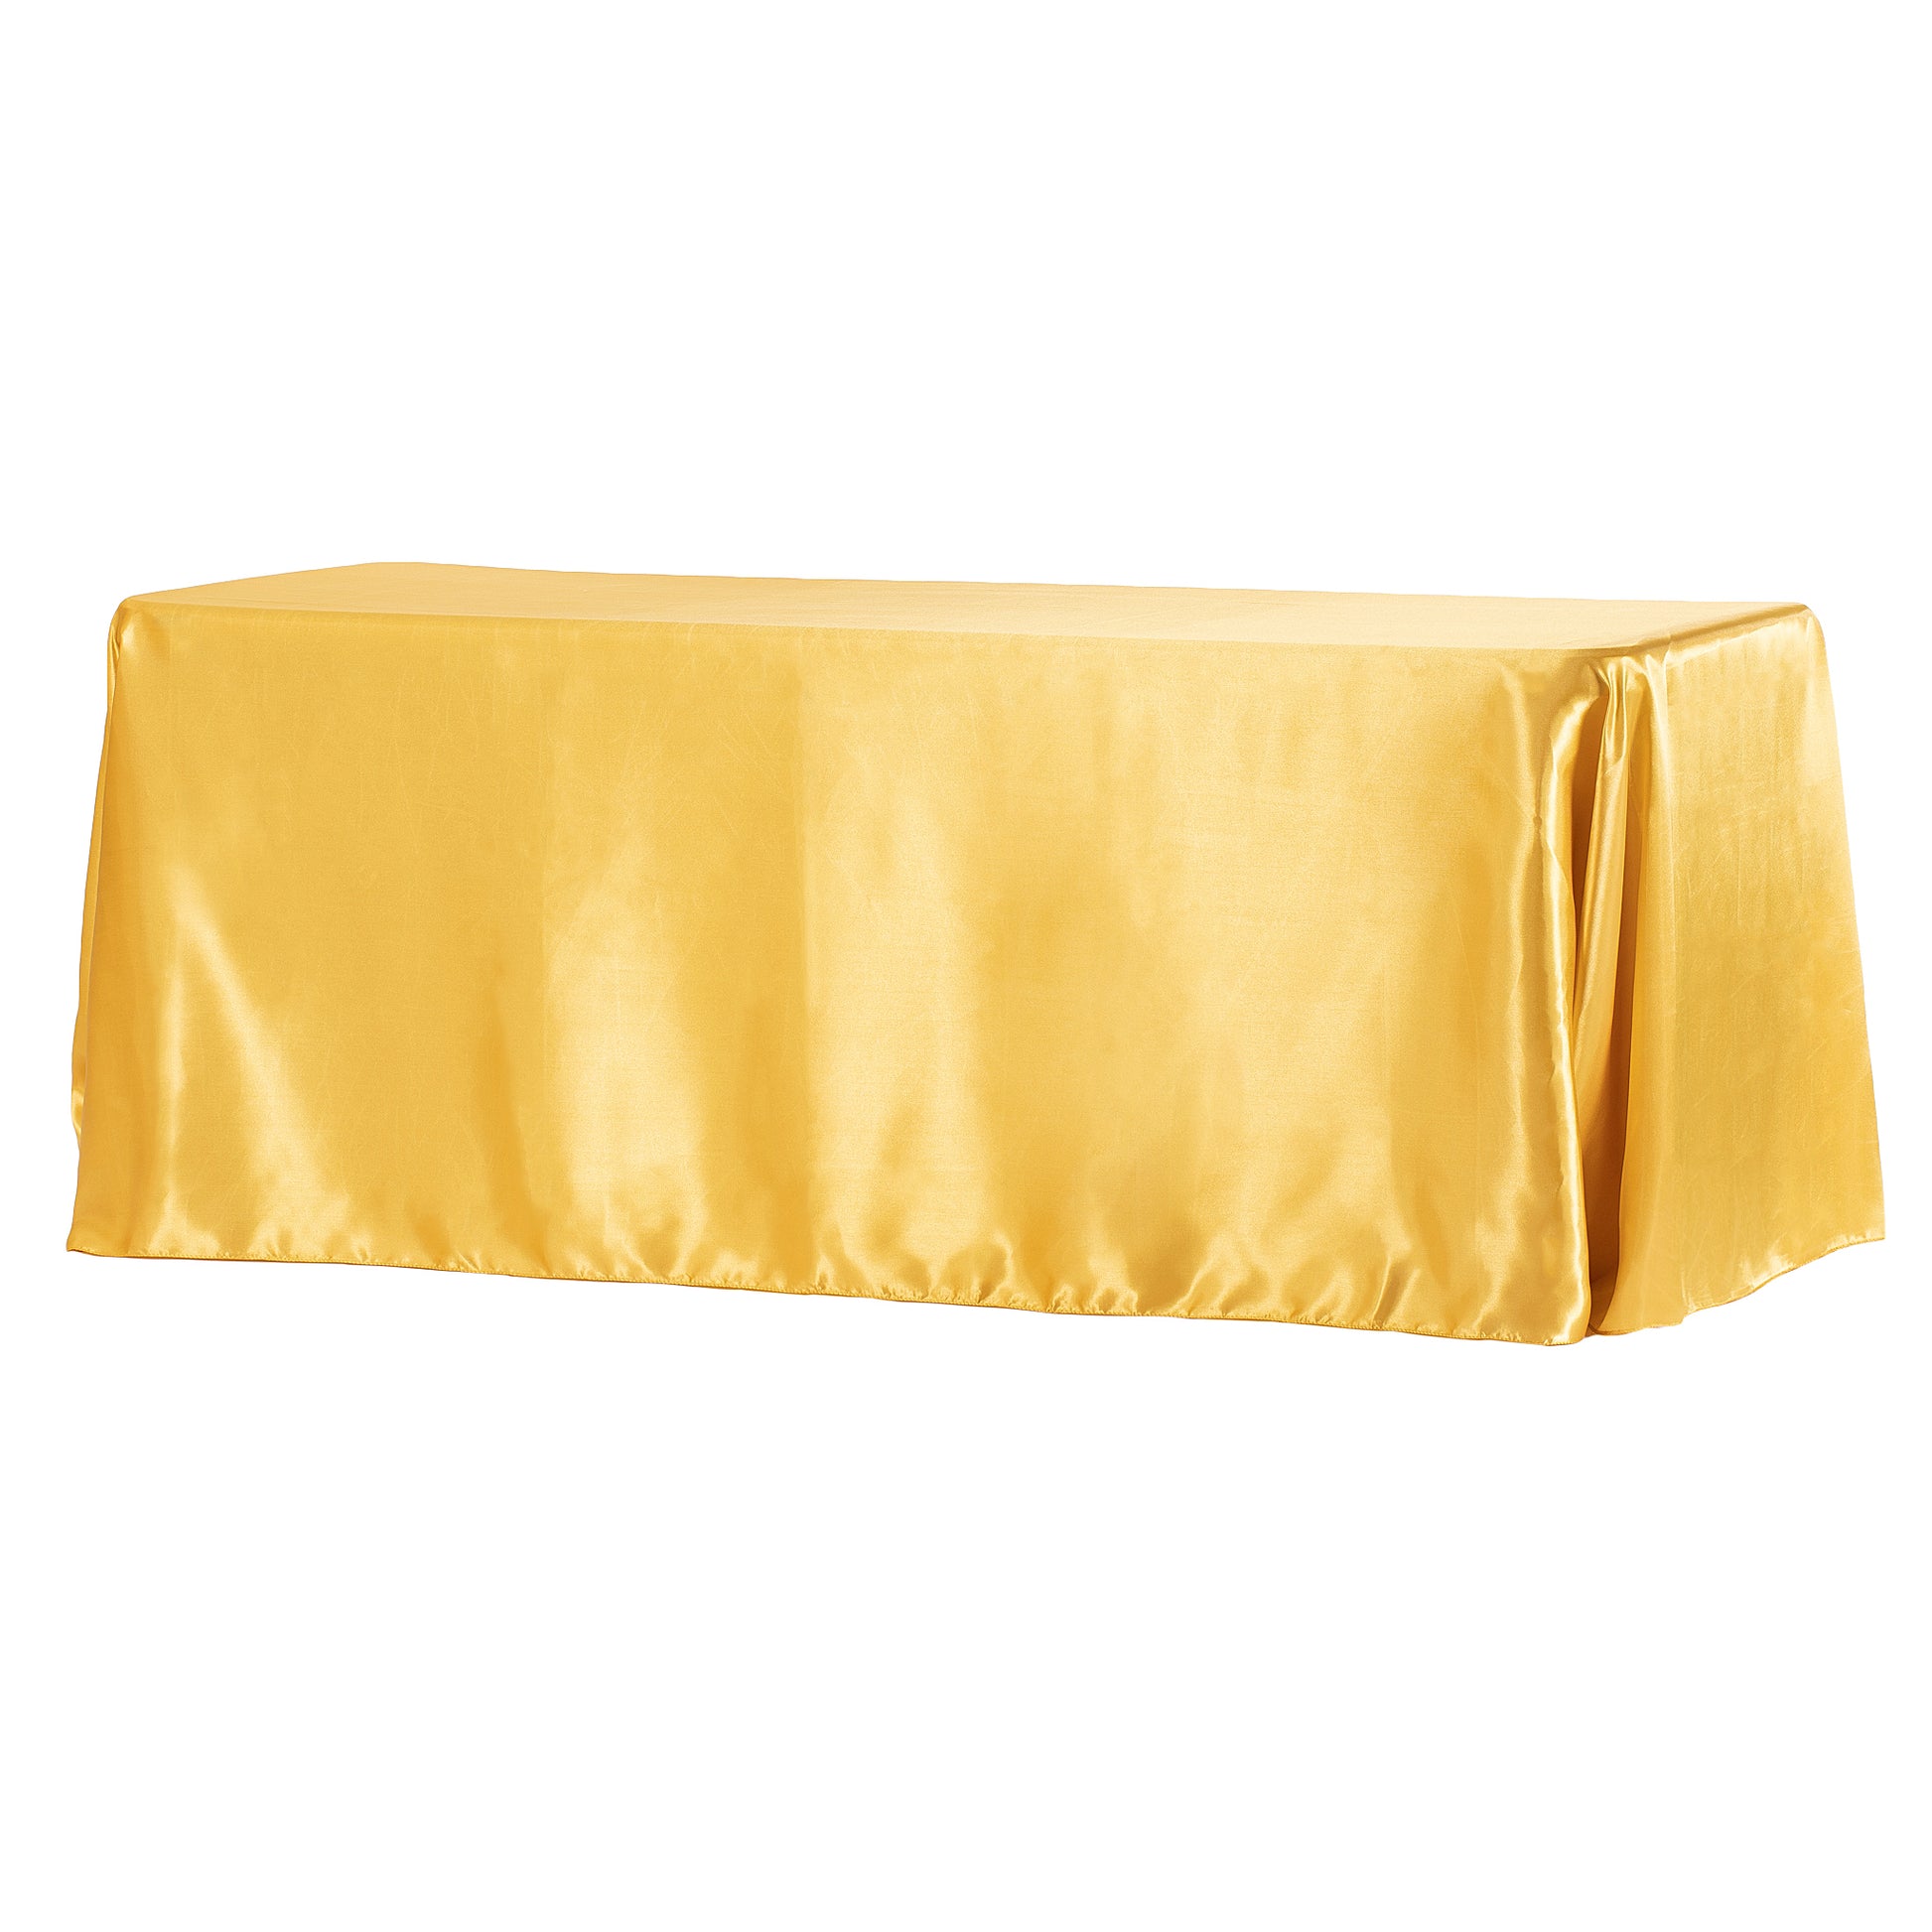 Rectangular Satin Tablecloth - Bright Gold